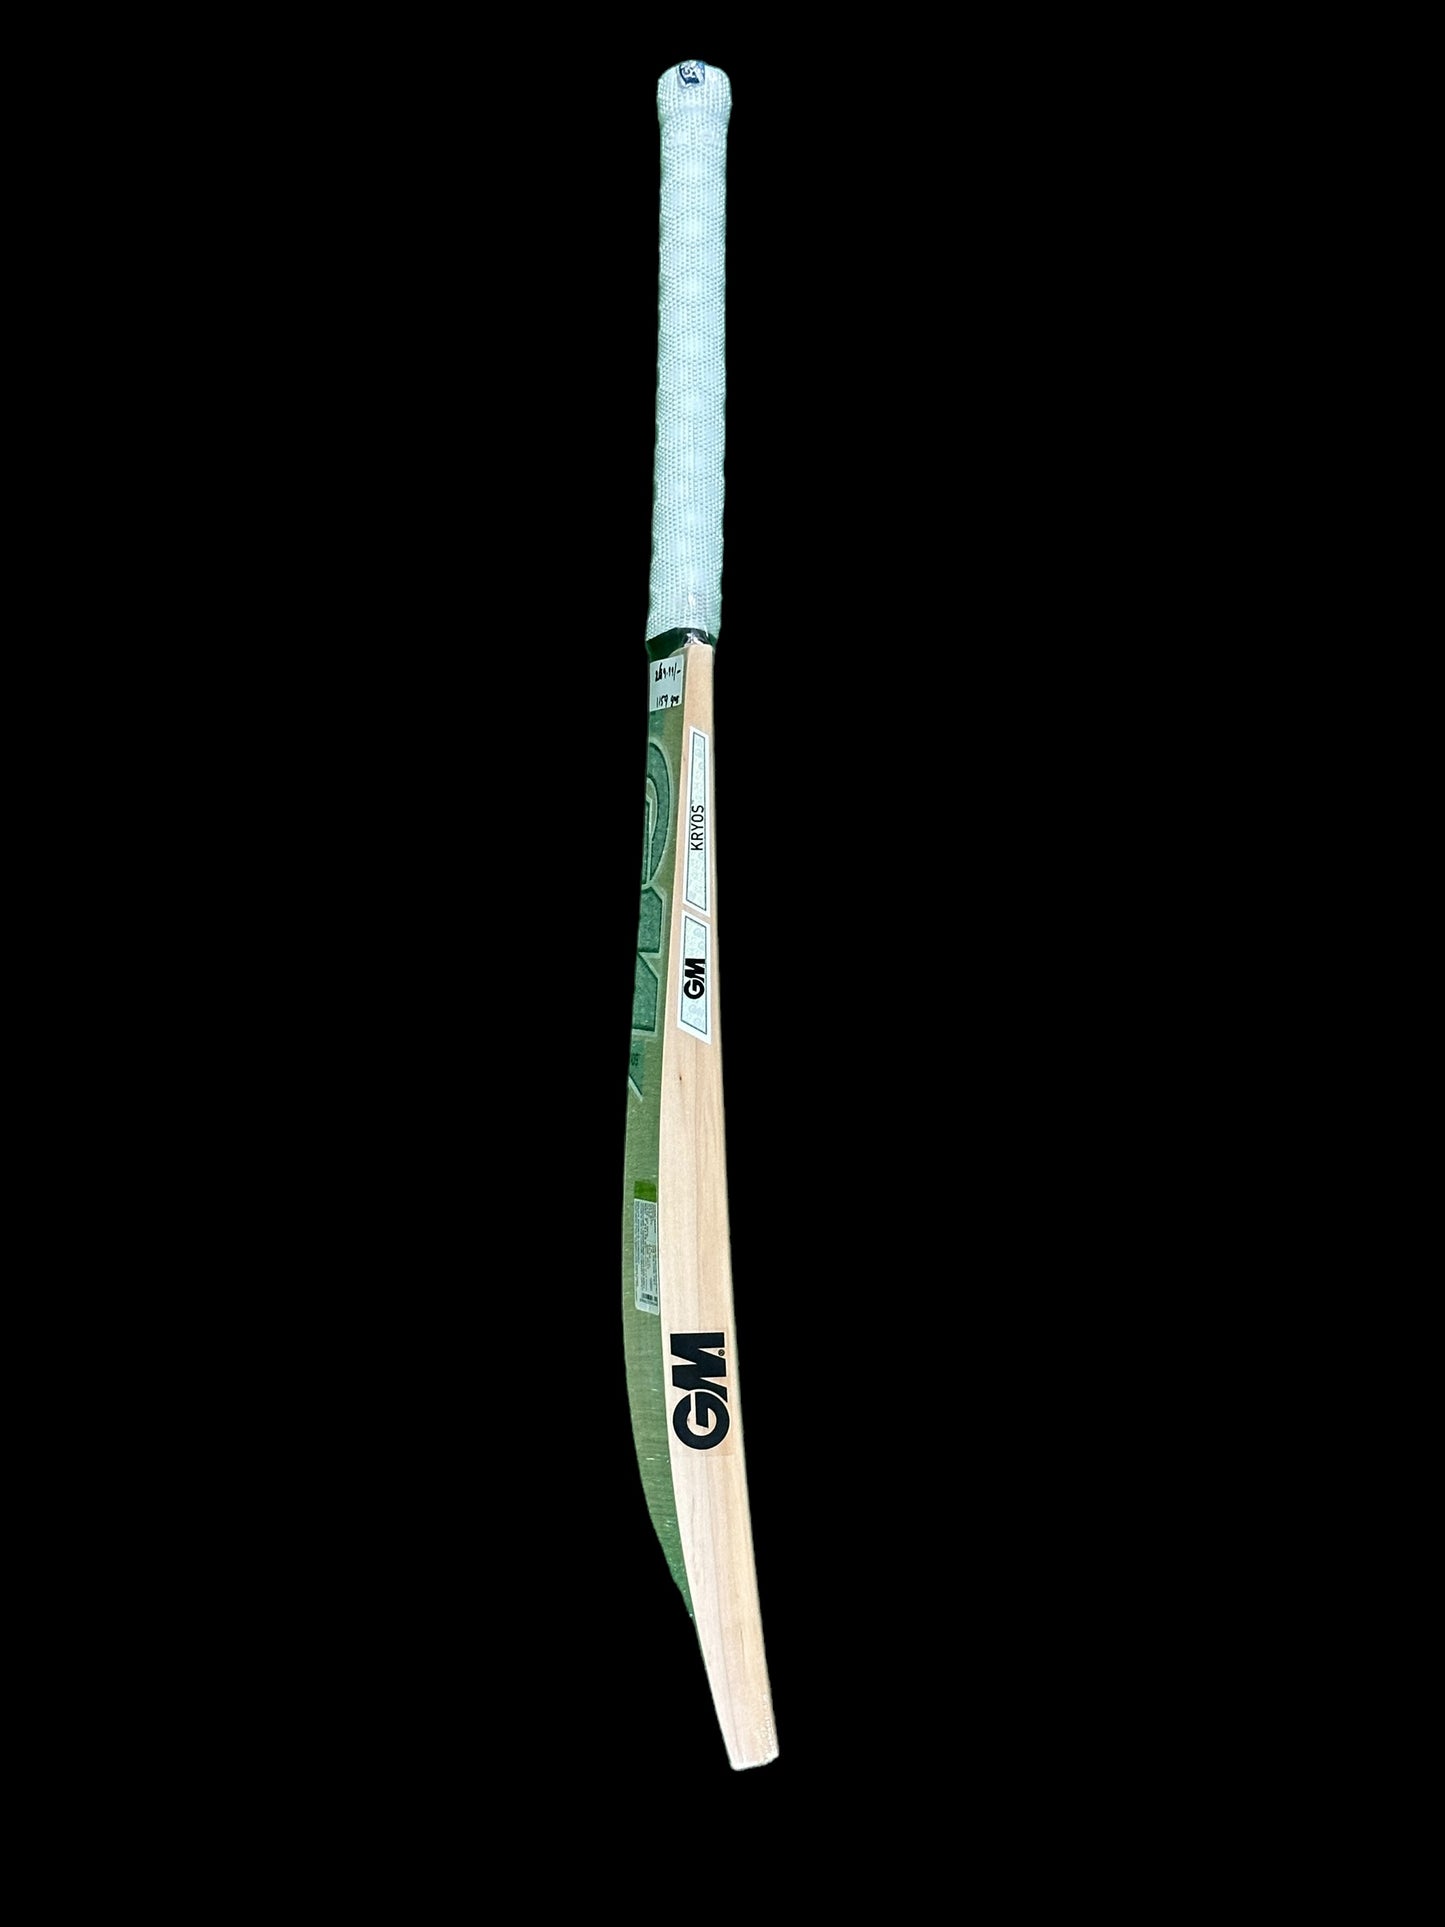 GM Kyros 707 Cricket Bat